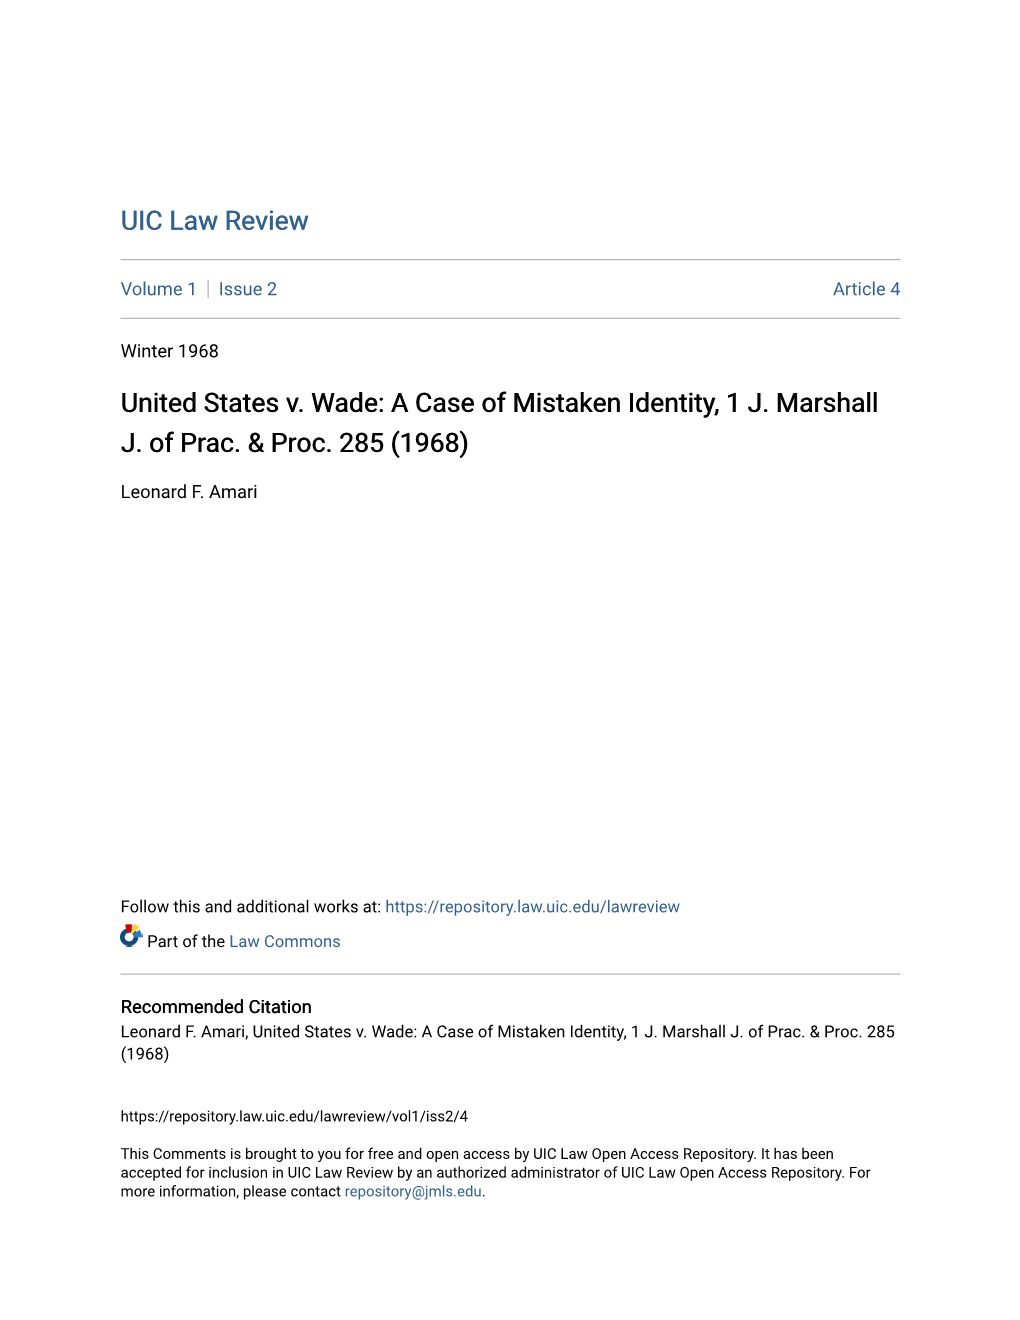 United States V. Wade: a Case of Mistaken Identity, 1 J. Marshall J. of Prac